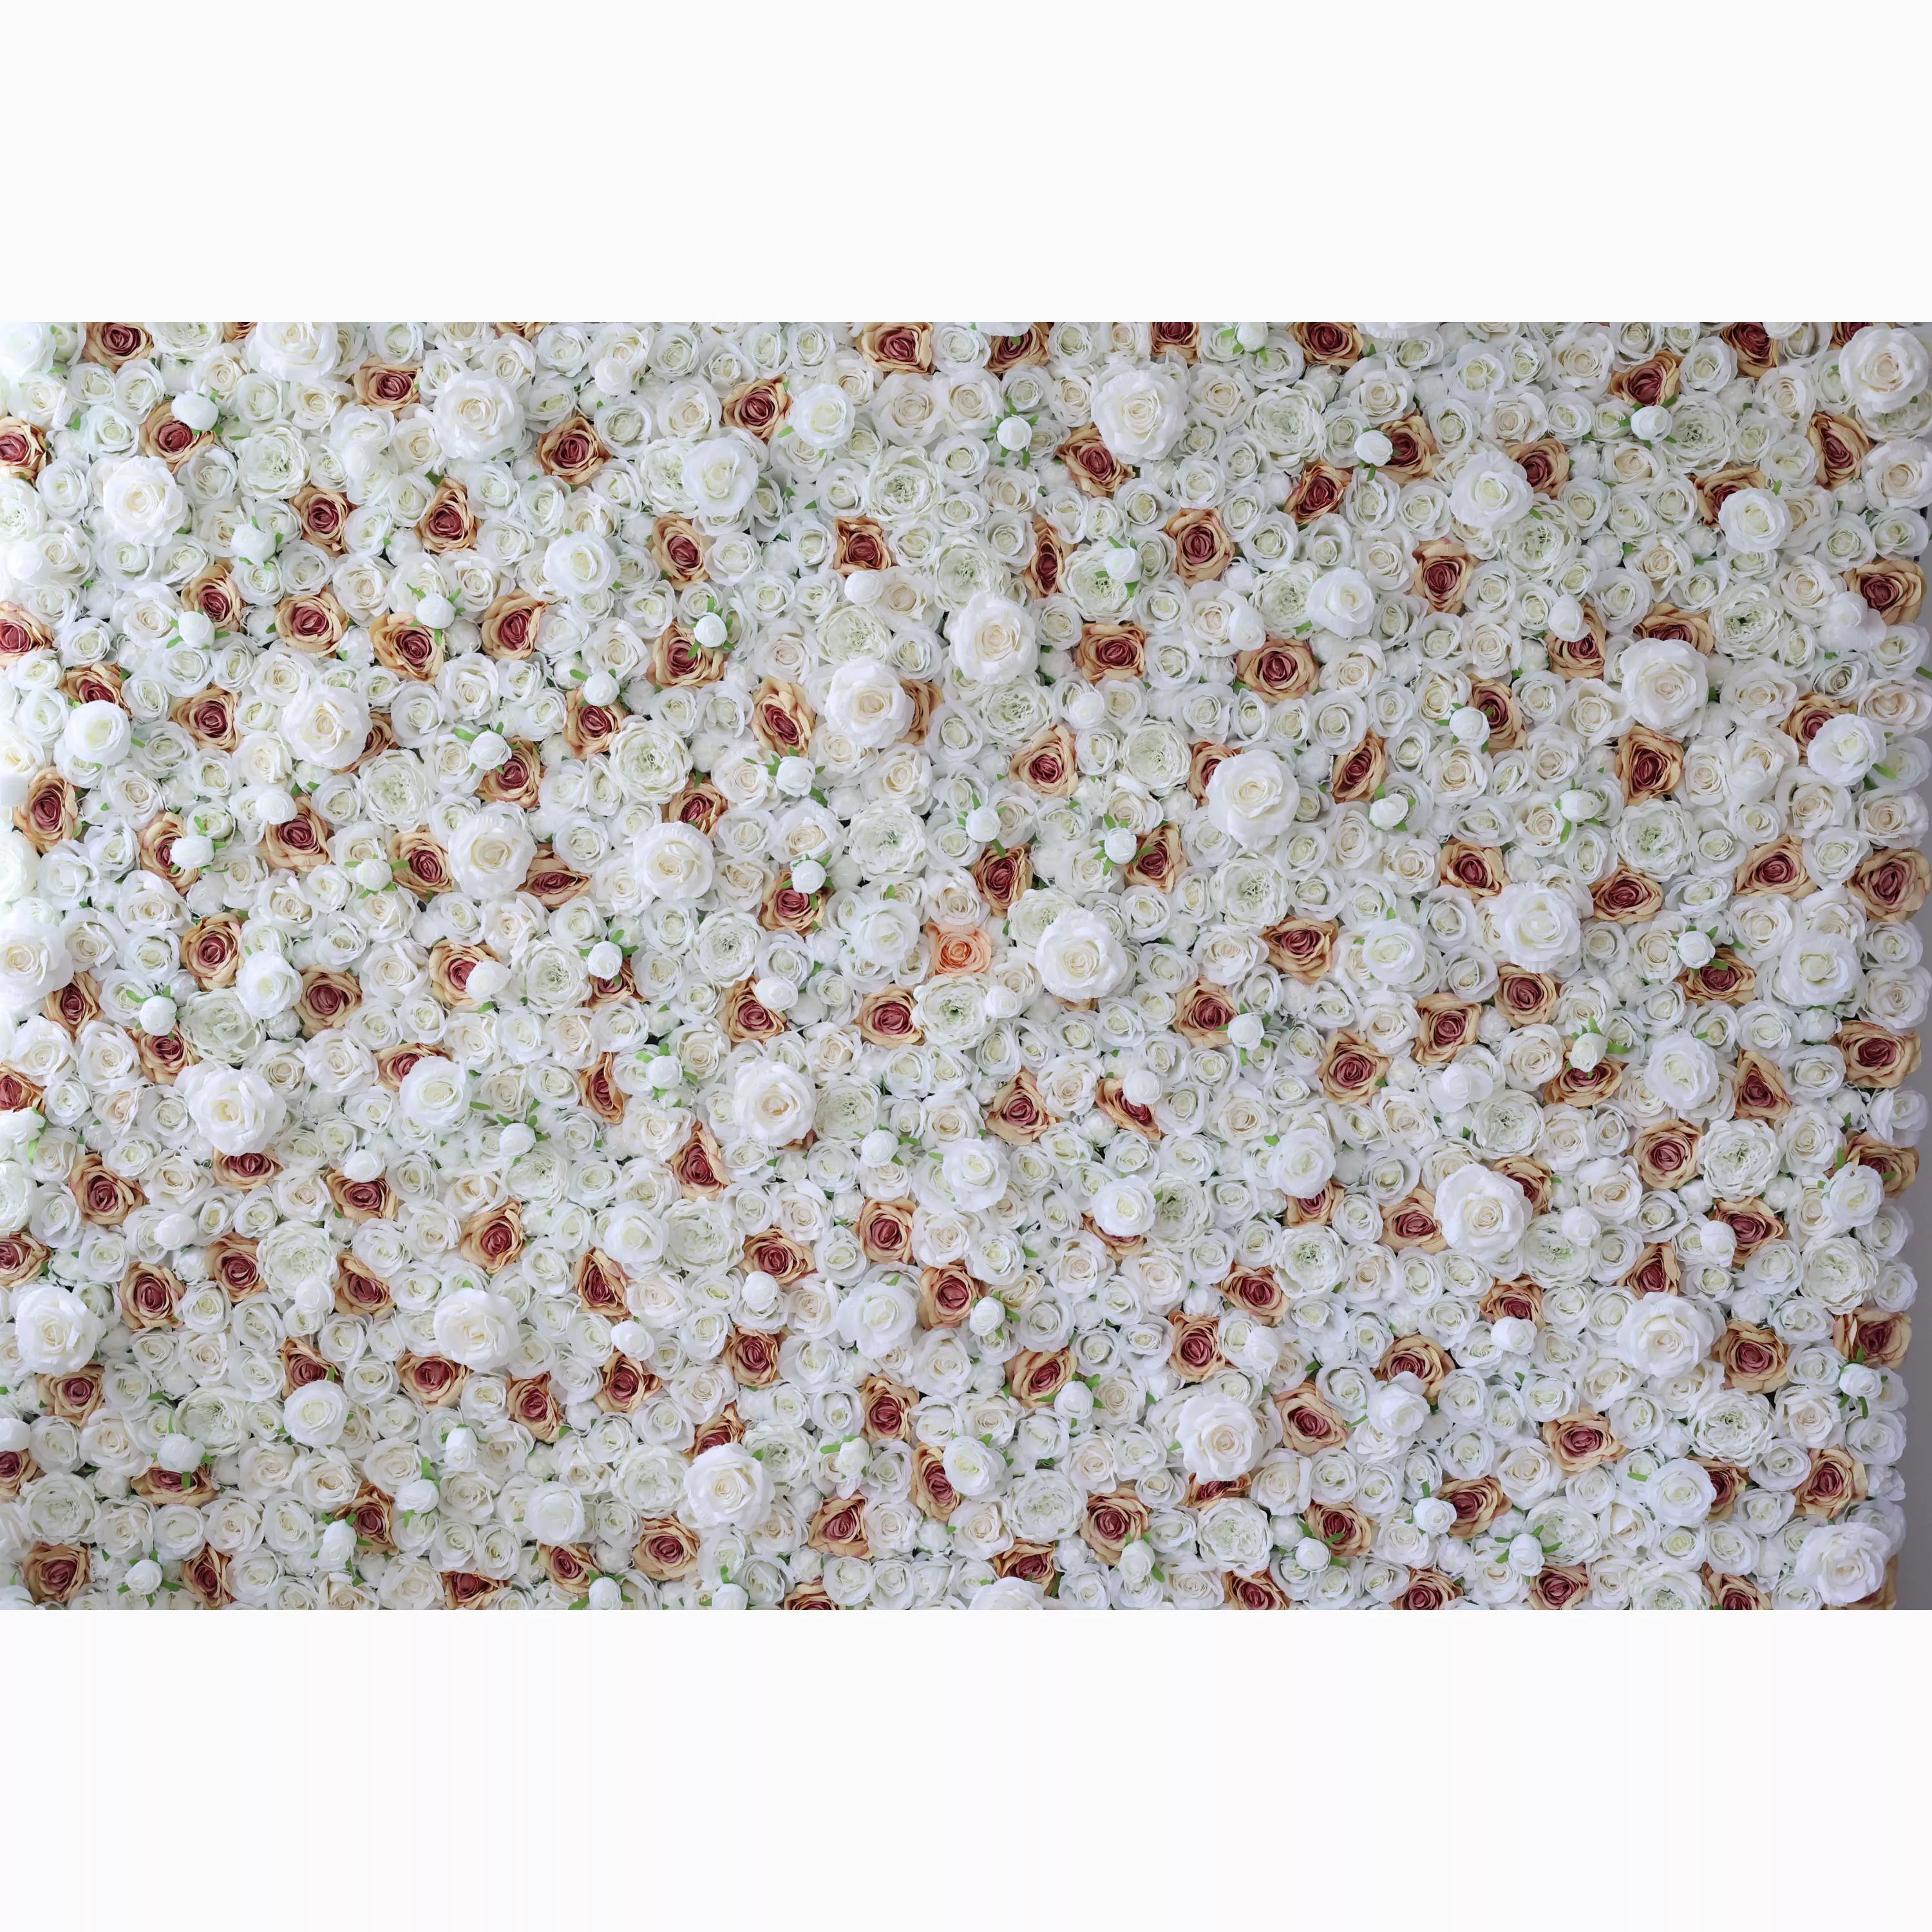 Valar Flowers dévoile : Elysian Meadows – Un mélange majestueux de roses en tissu blanc et pêche clair – Mur floral par excellence pour les mariages, les célébrations et les décors intérieurs sophistiqués-VF-218